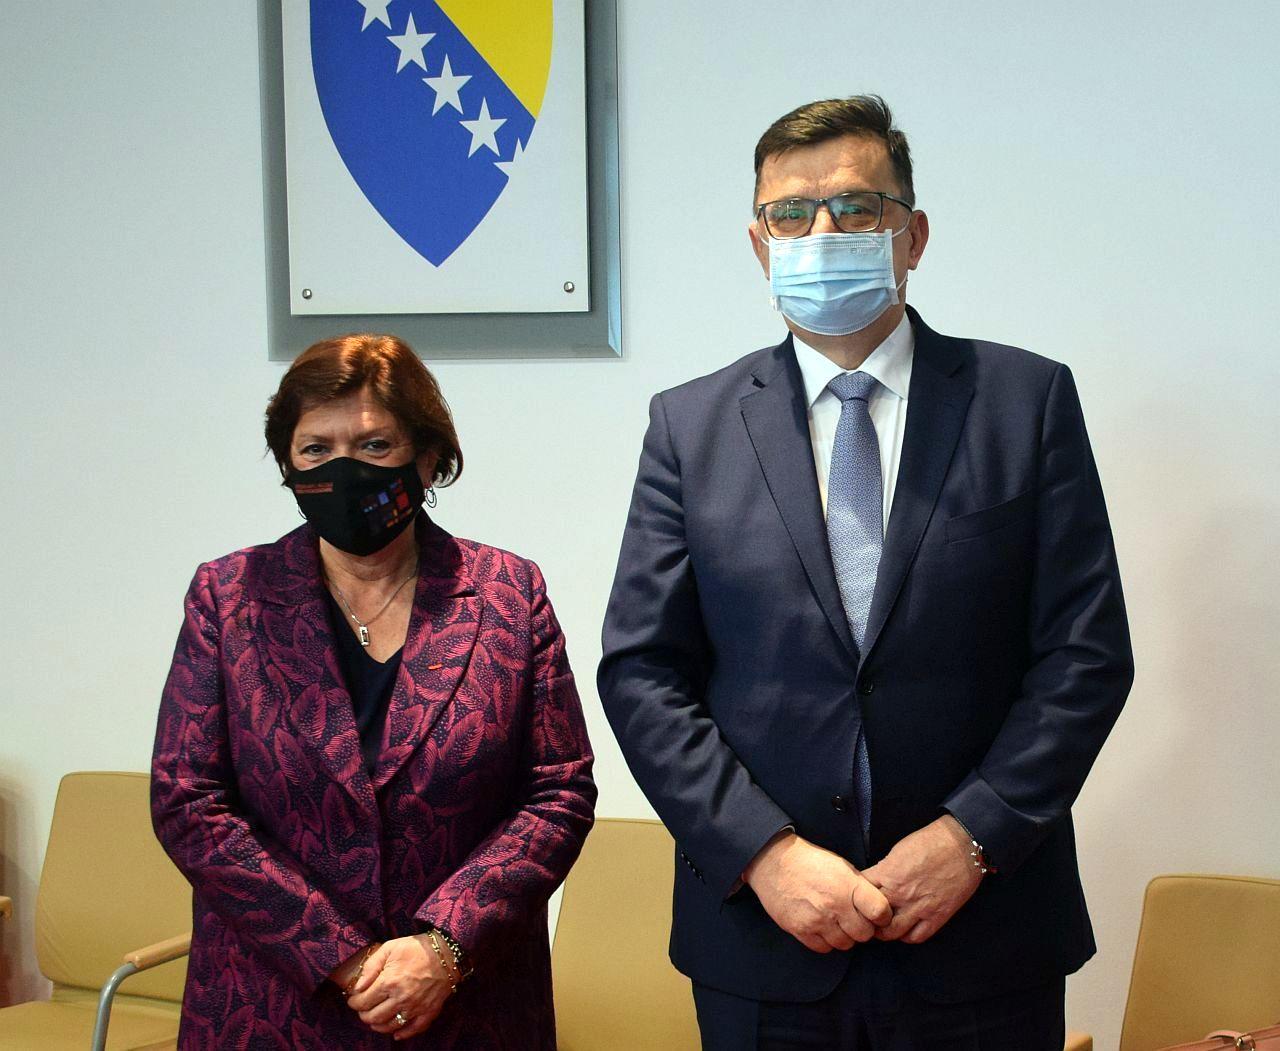 Tegeltija i Tudik: Na današnjem sastanku je razgovarano o aktuelnim političkim temama - Avaz